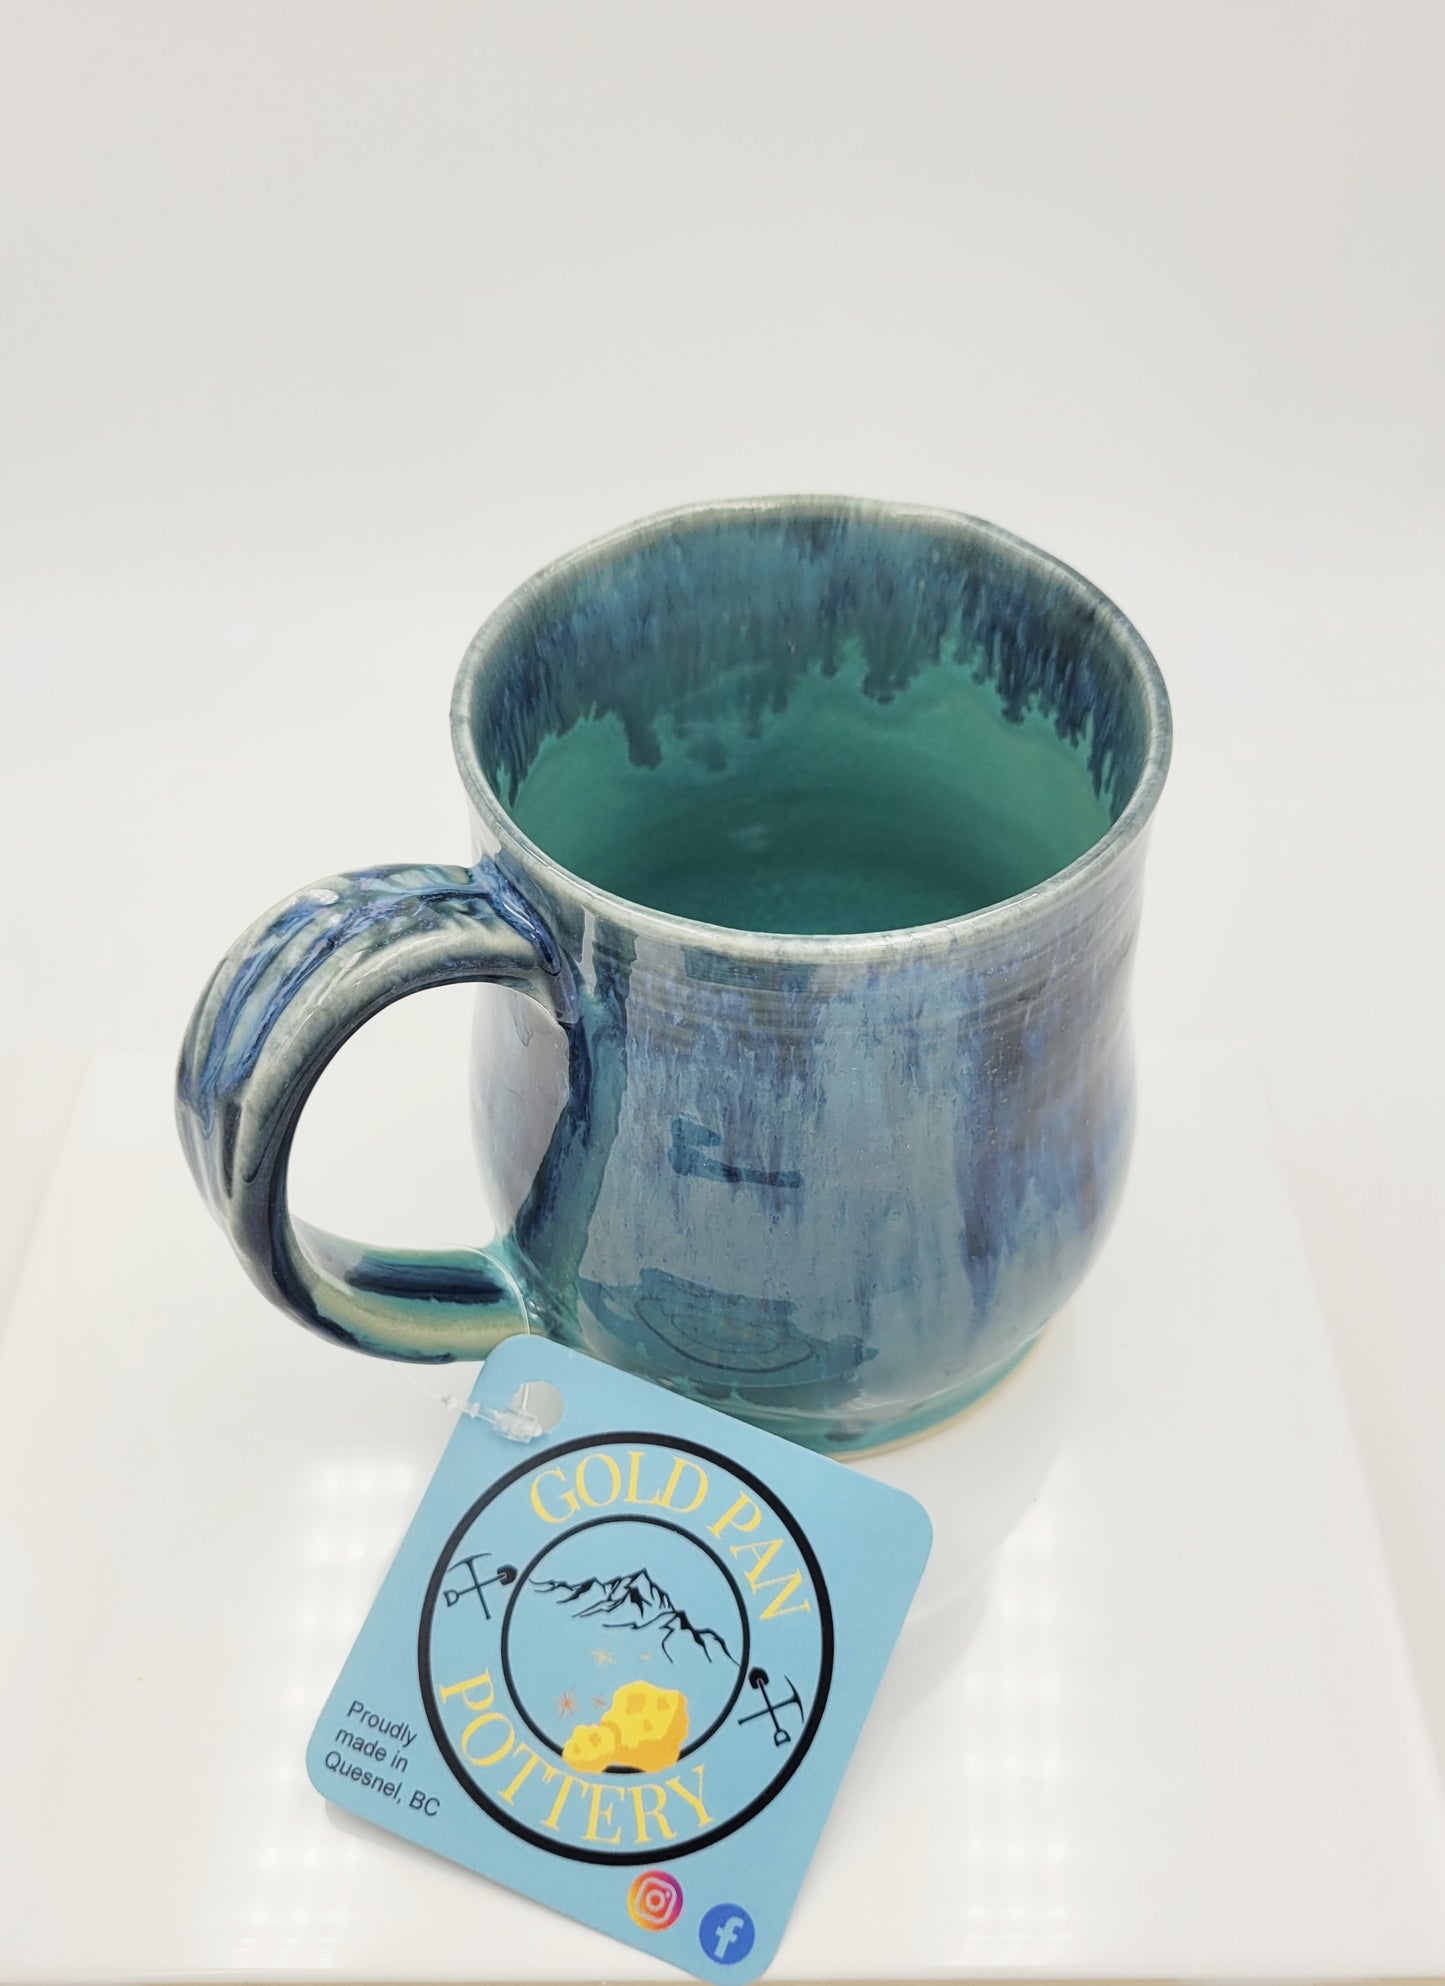 Teal and Blue Pottery Mug